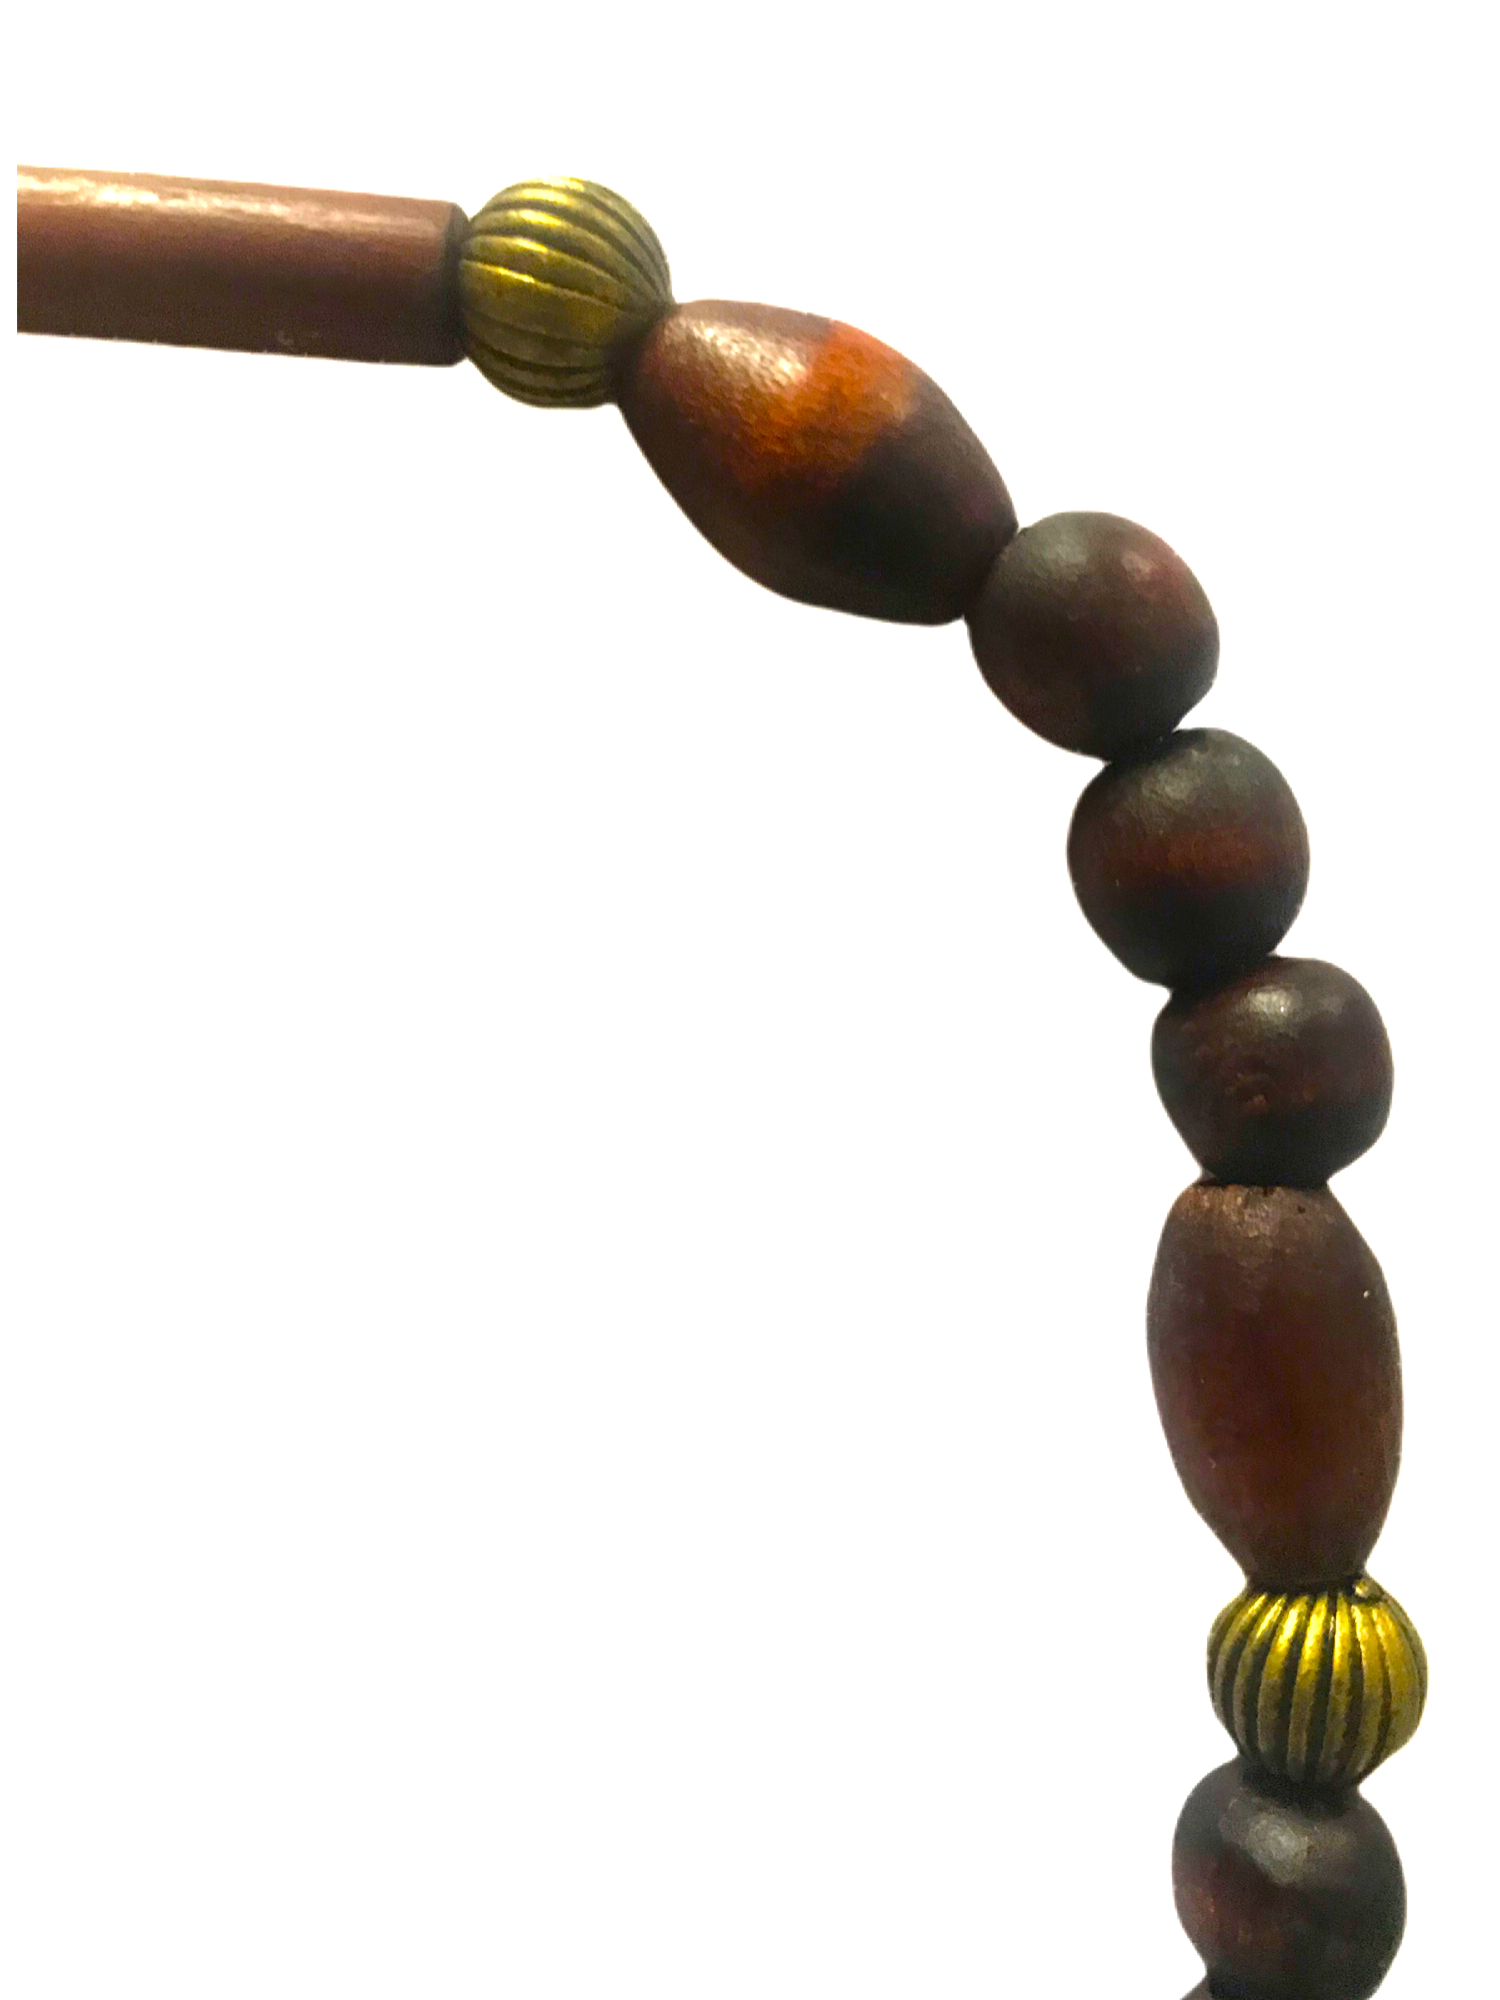 Bijou Noelya I.- Collier de perle en bois et métalliques dorées striés